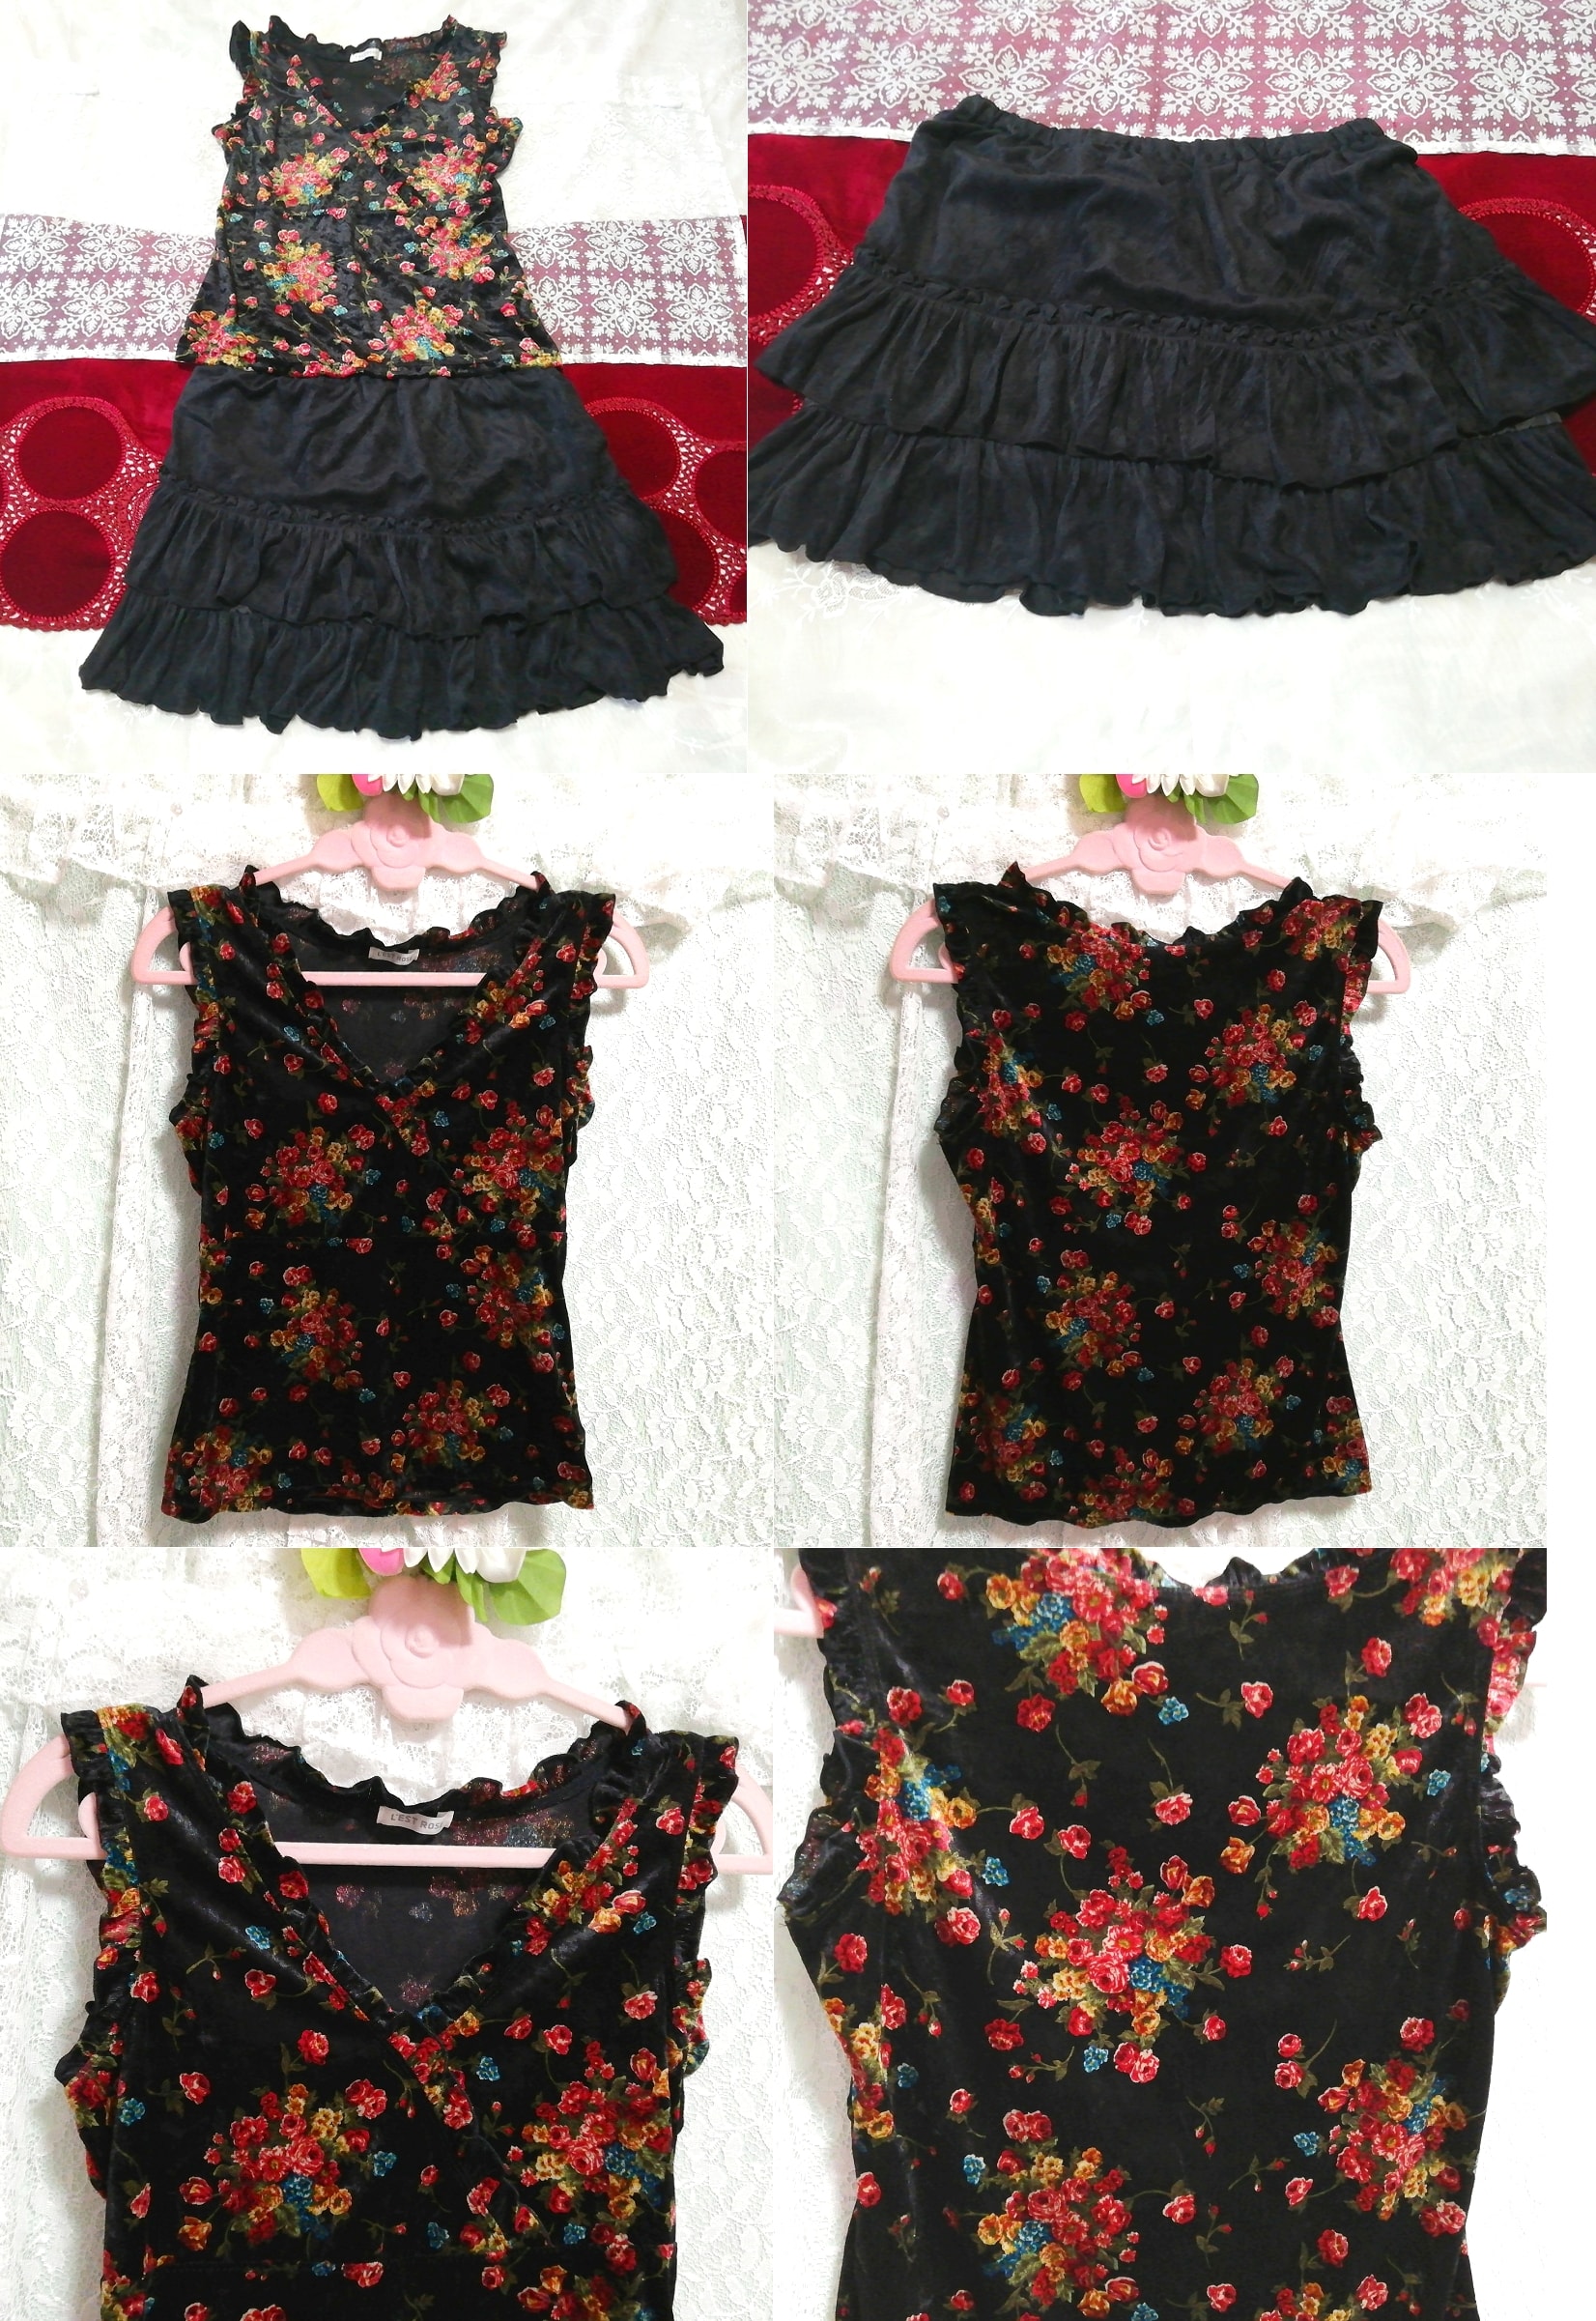 블랙 벨루어 꽃무늬 민소매 튜닉 네글리제 나이트가운 블랙 러플 미니스커트 2P, 패션, 숙녀 패션, 잠옷, 잠옷